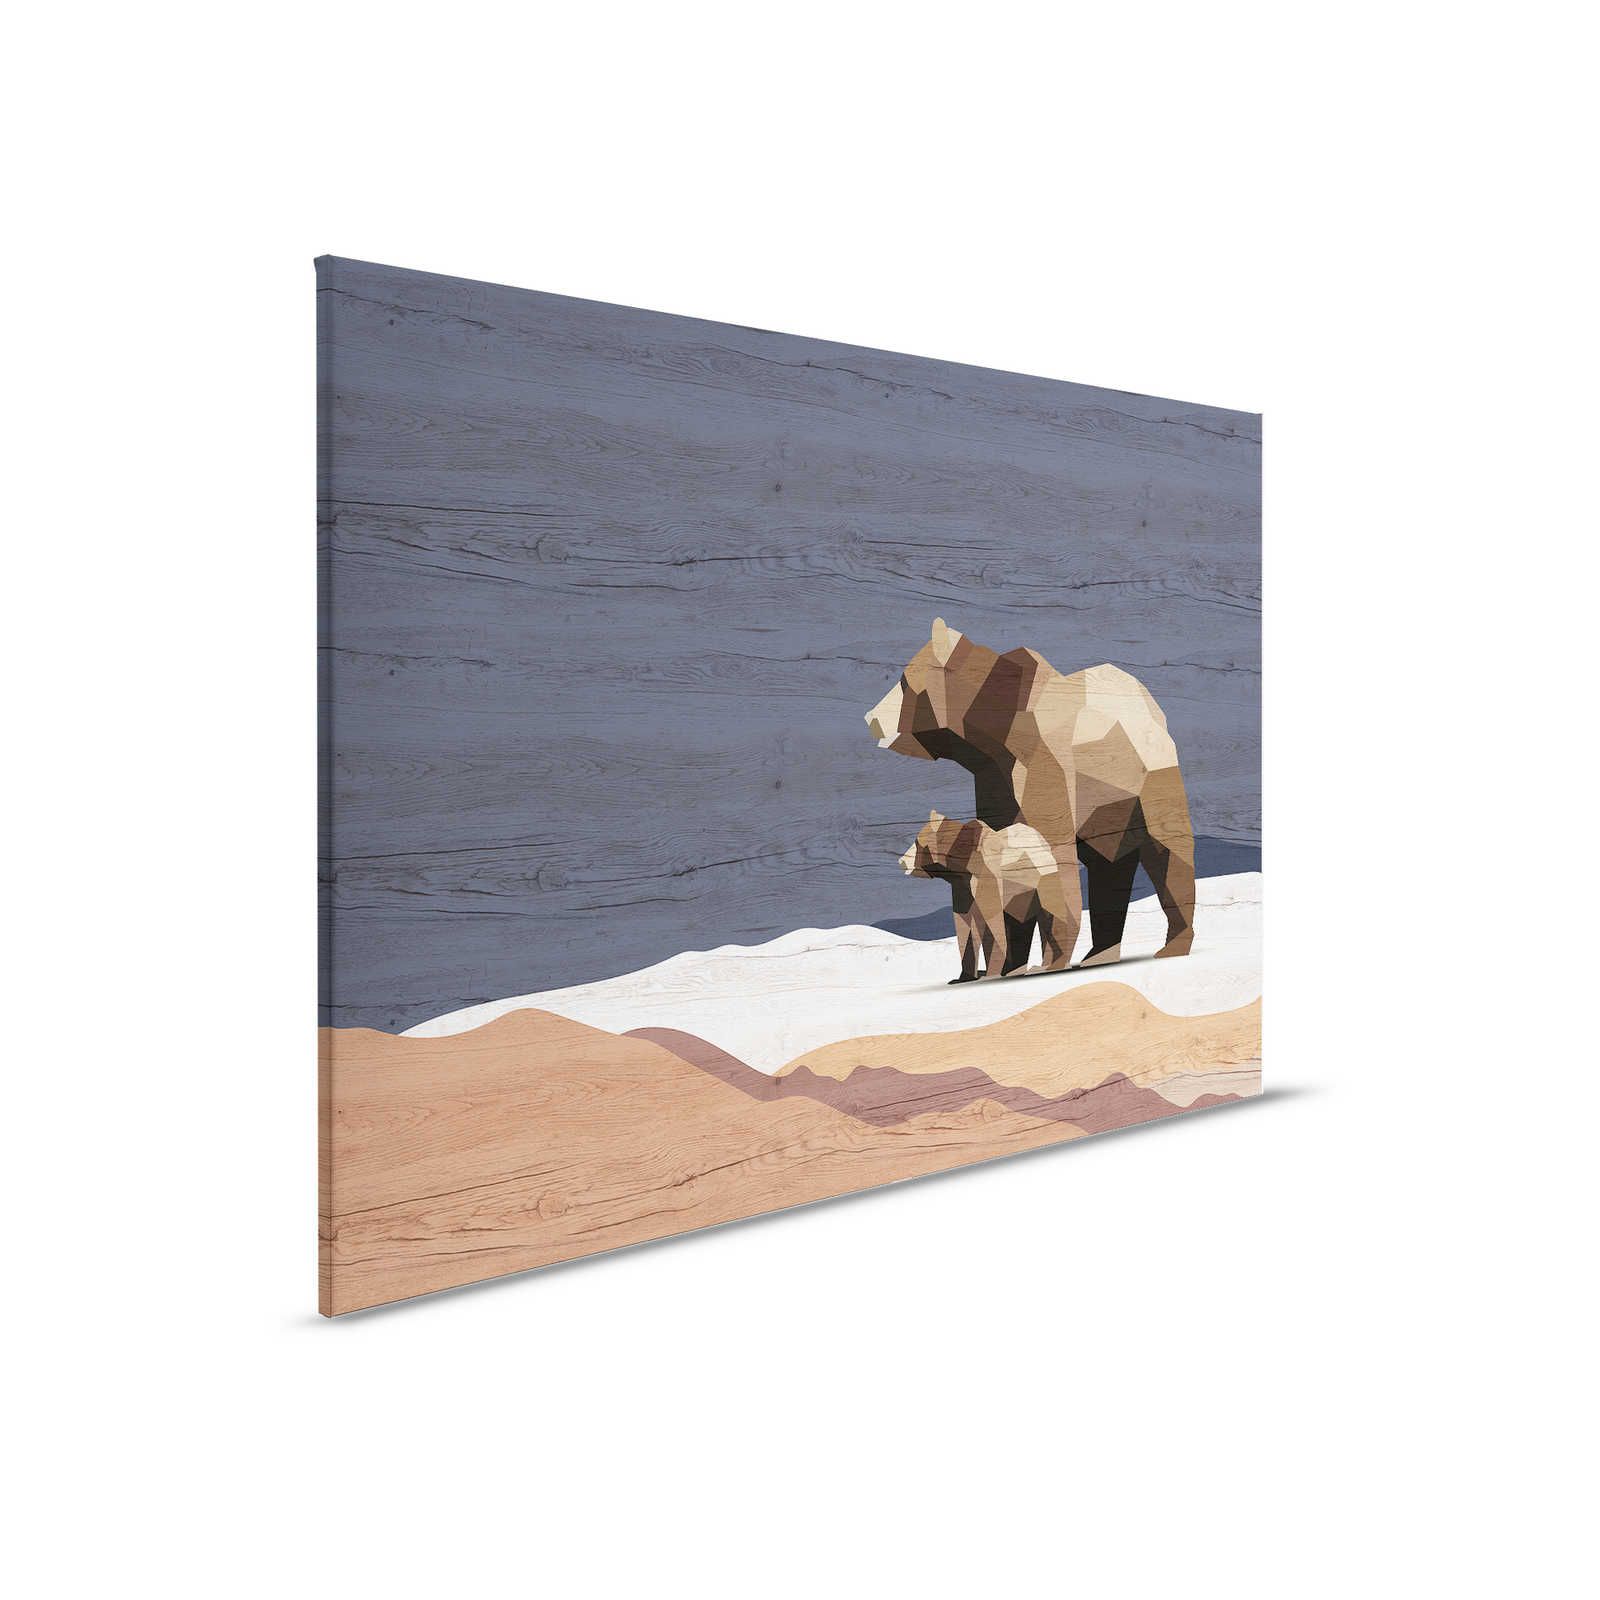 Yukon 3 - Cuadro en lienzo Familia de osos en diseño facetado y aspecto madera - 0,90 m x 0,60 m
